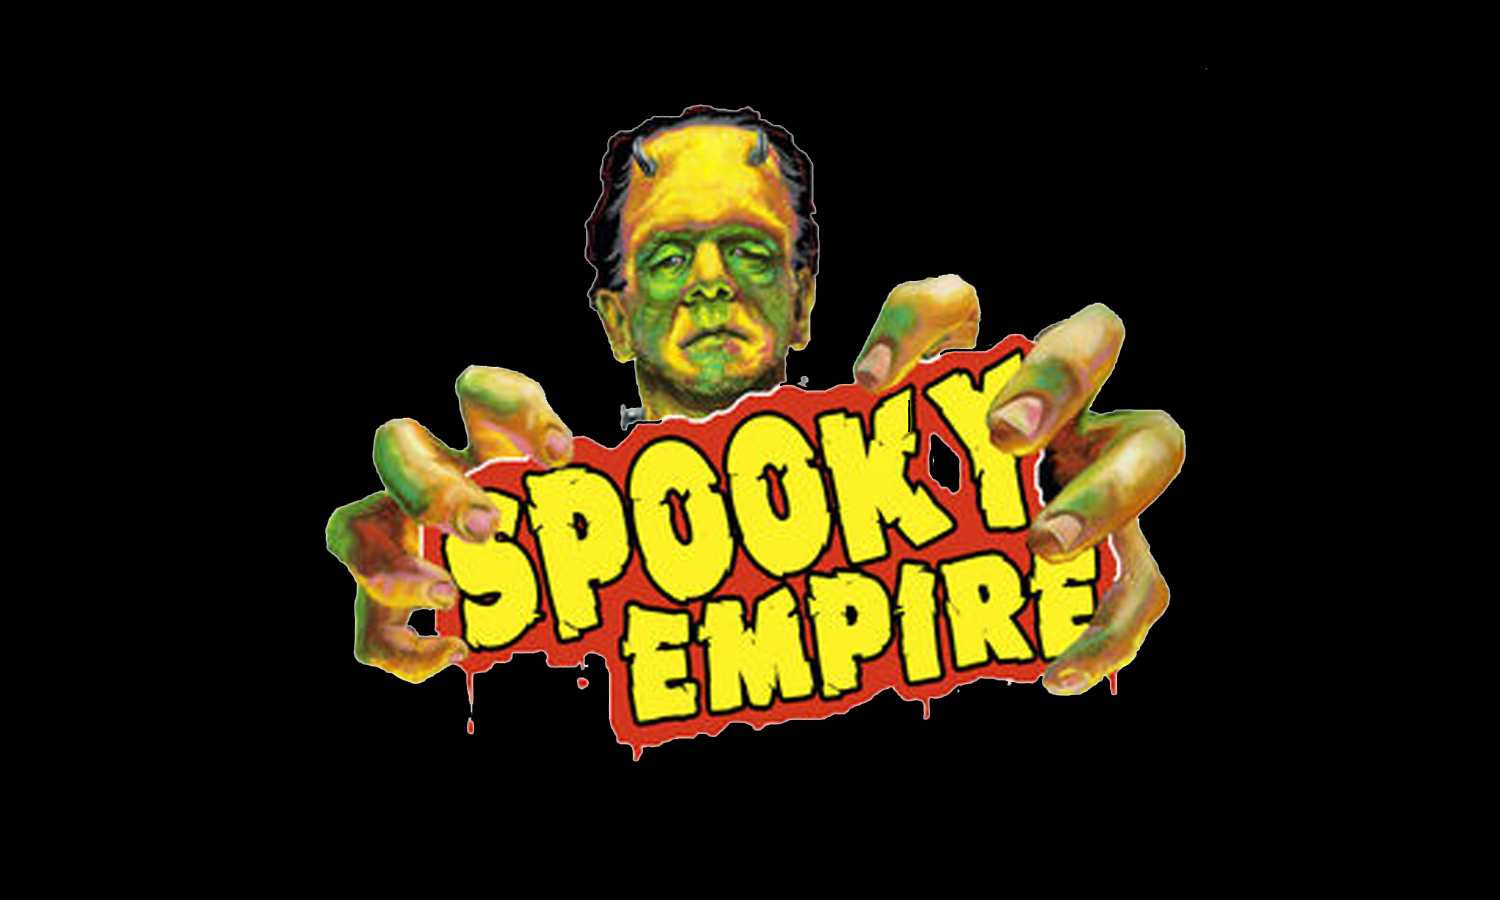 ¡Spooky Empire en Orlando Halloween Weekend!